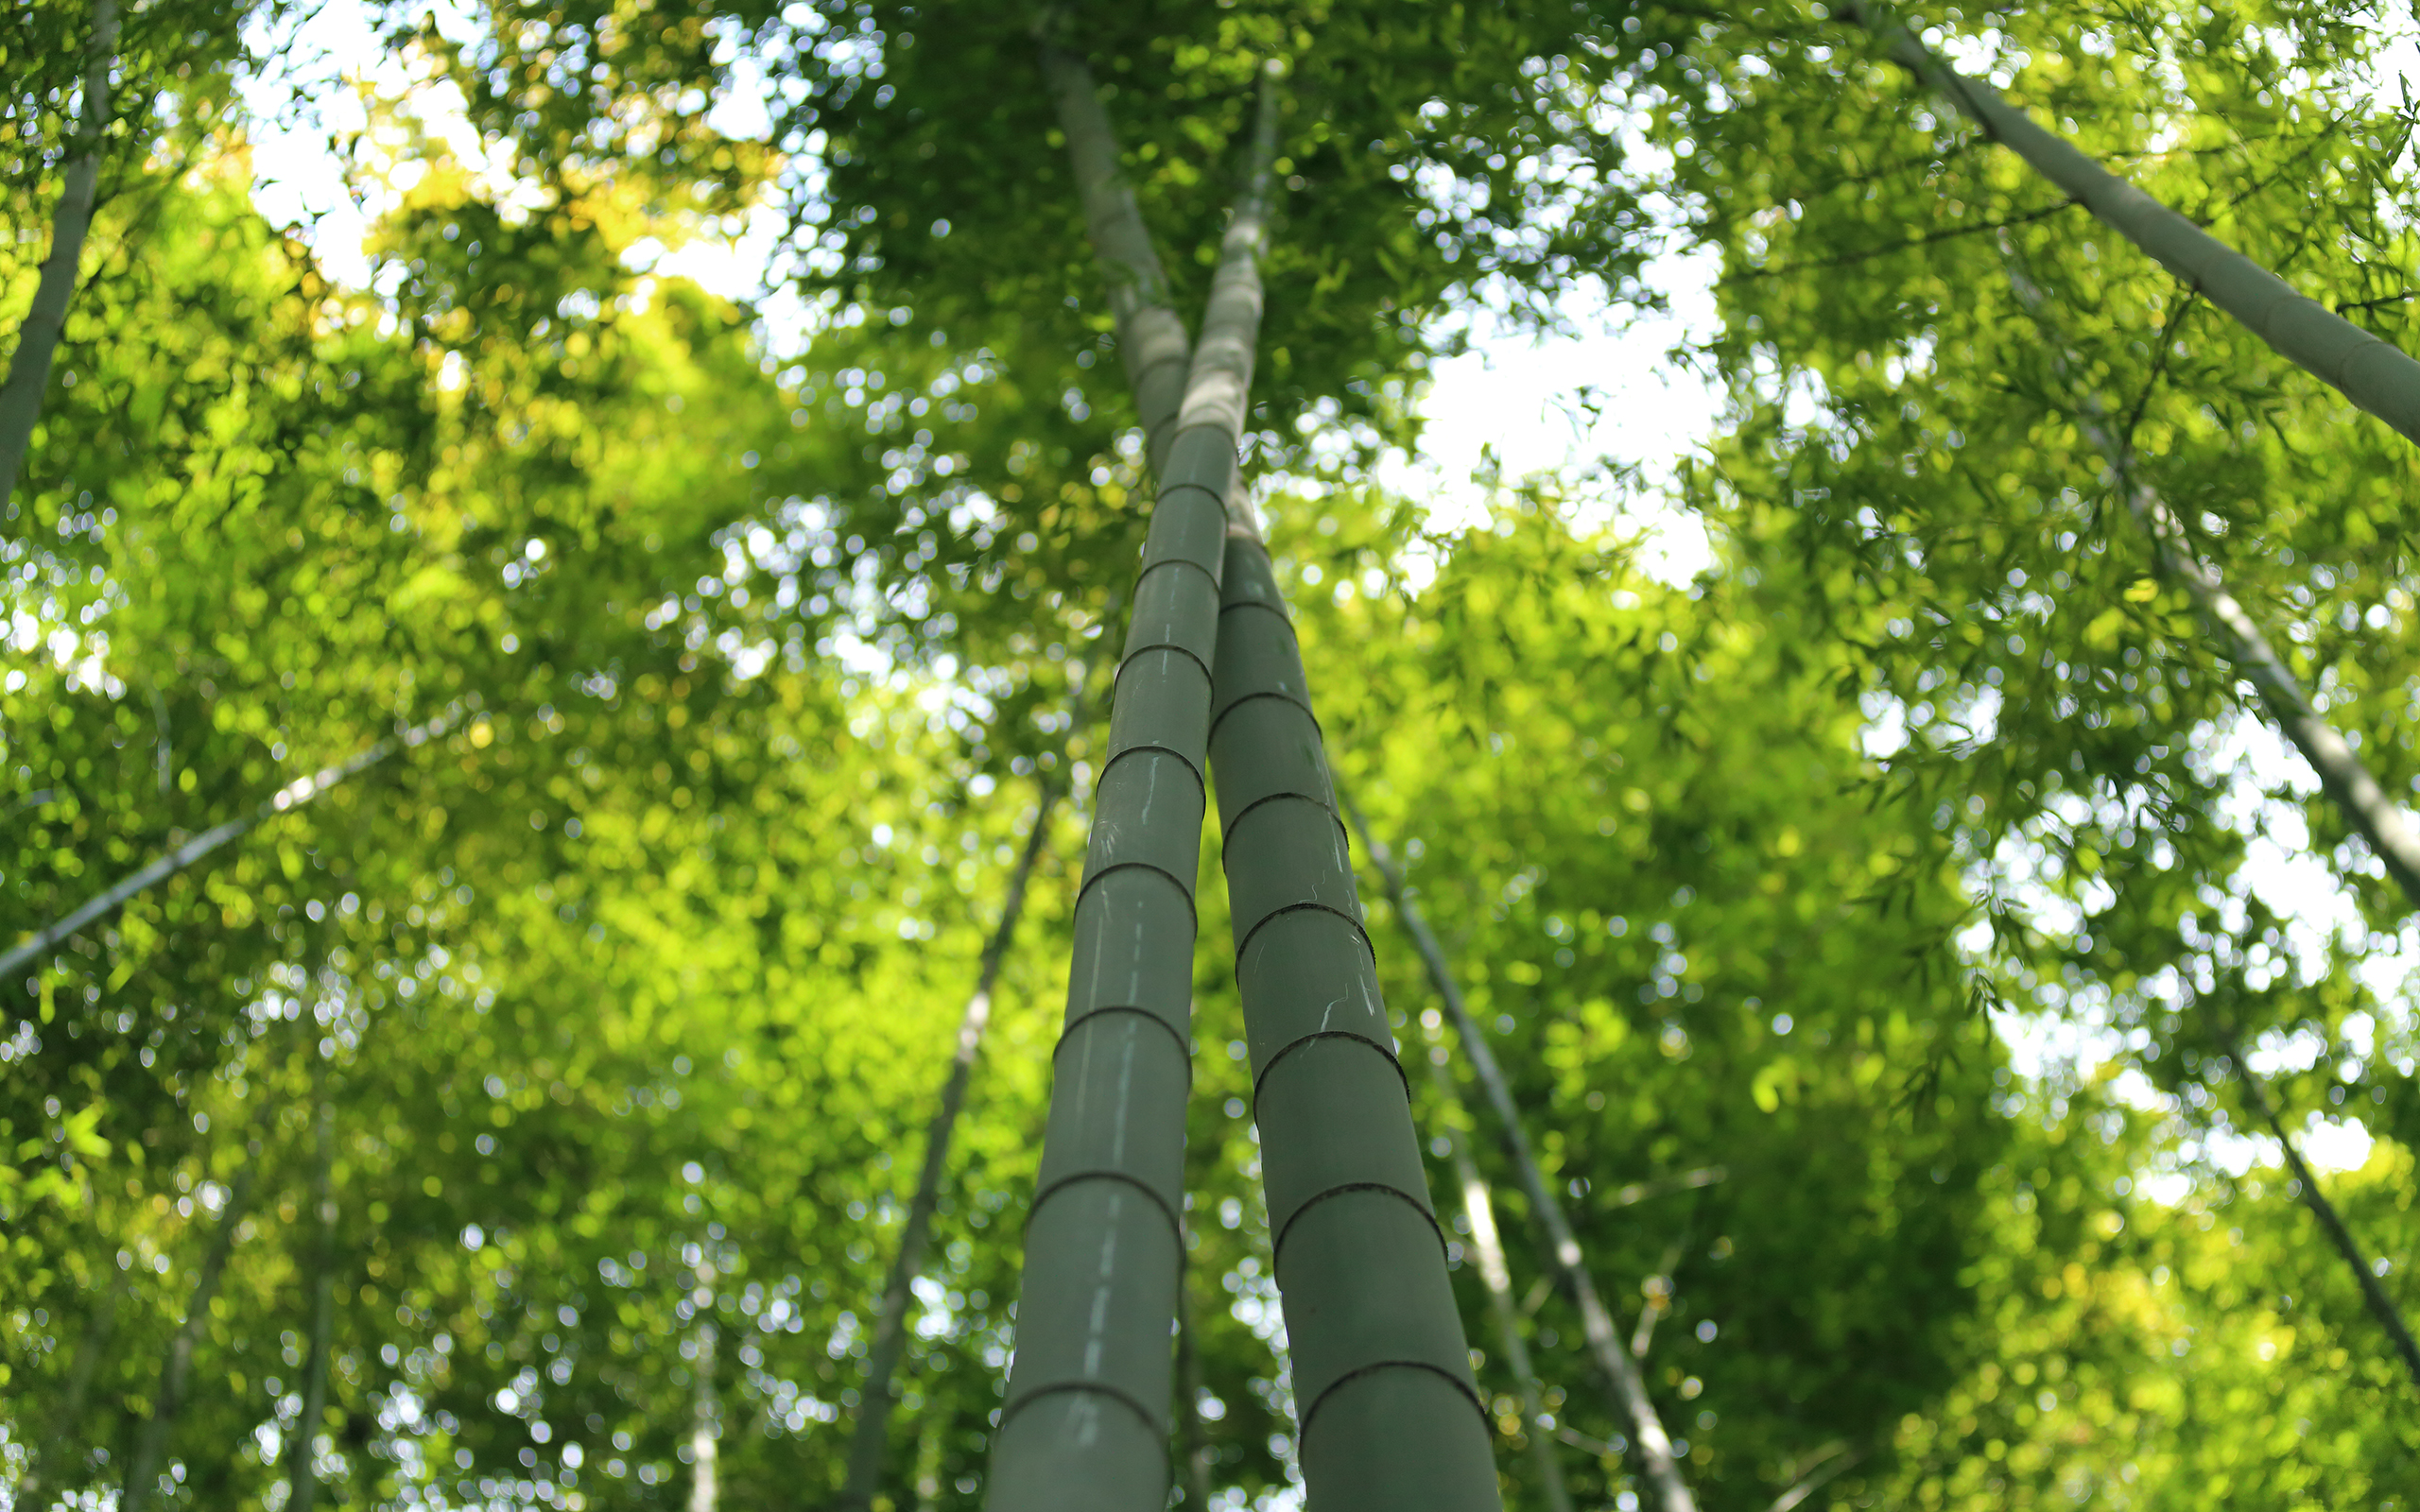 Earth Bamboo 2560x1600